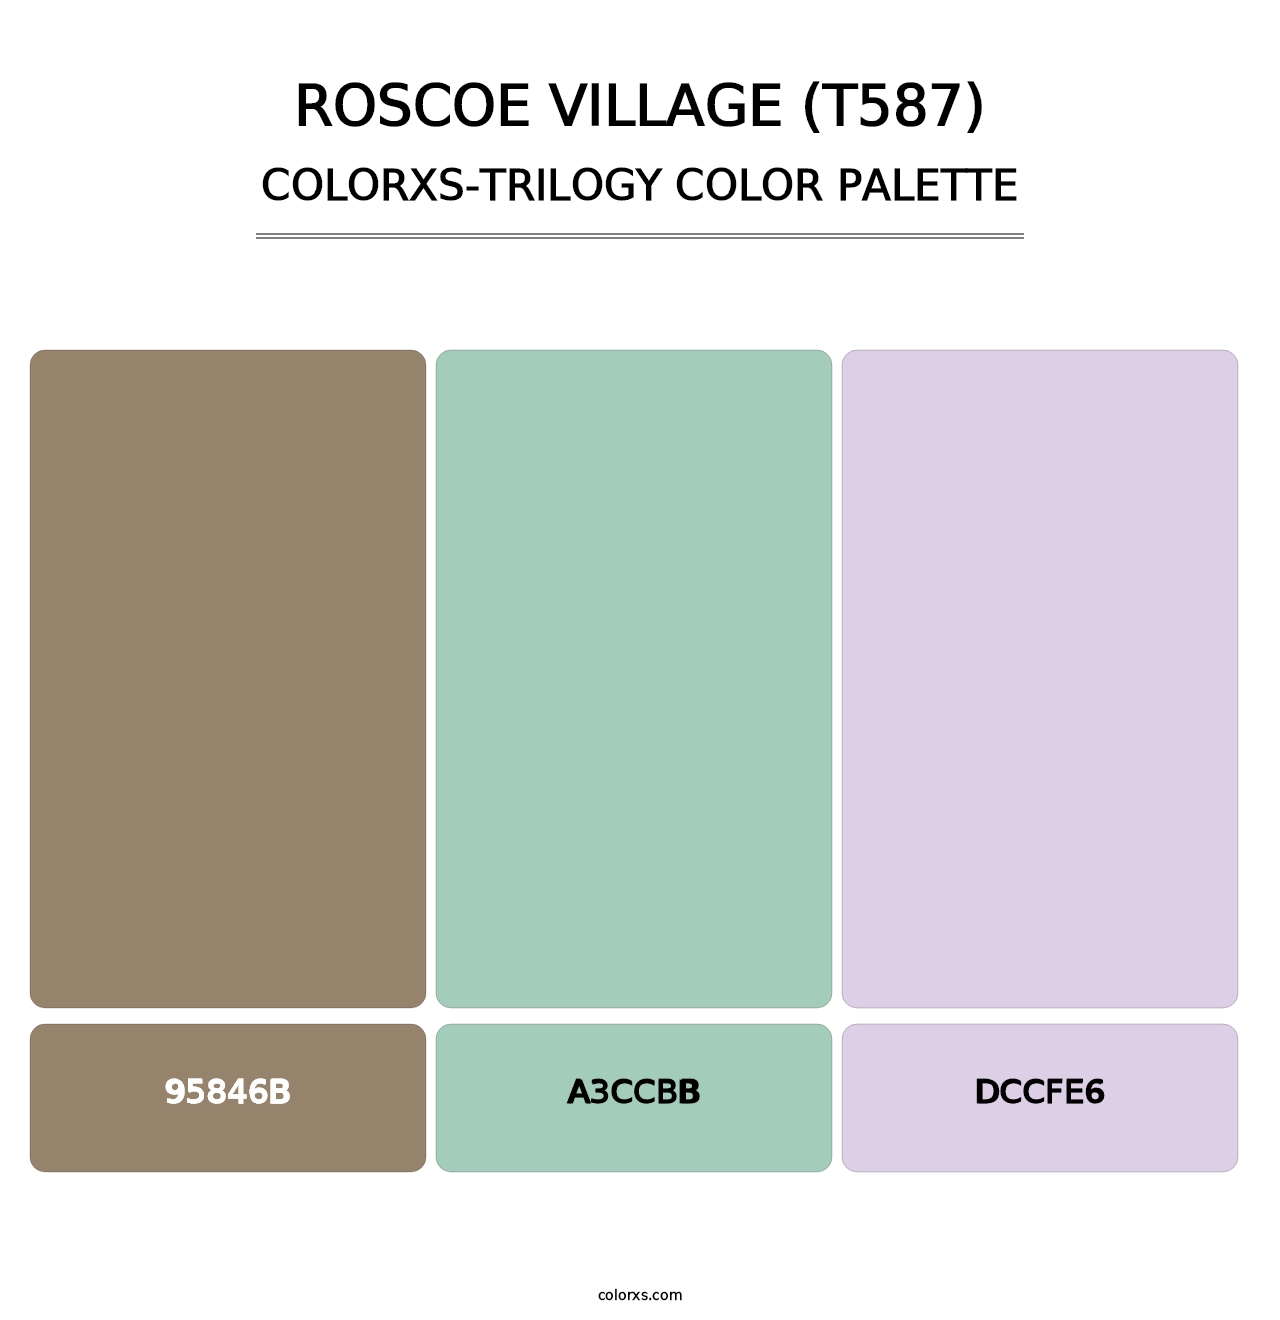 Roscoe Village (T587) - Colorxs Trilogy Palette